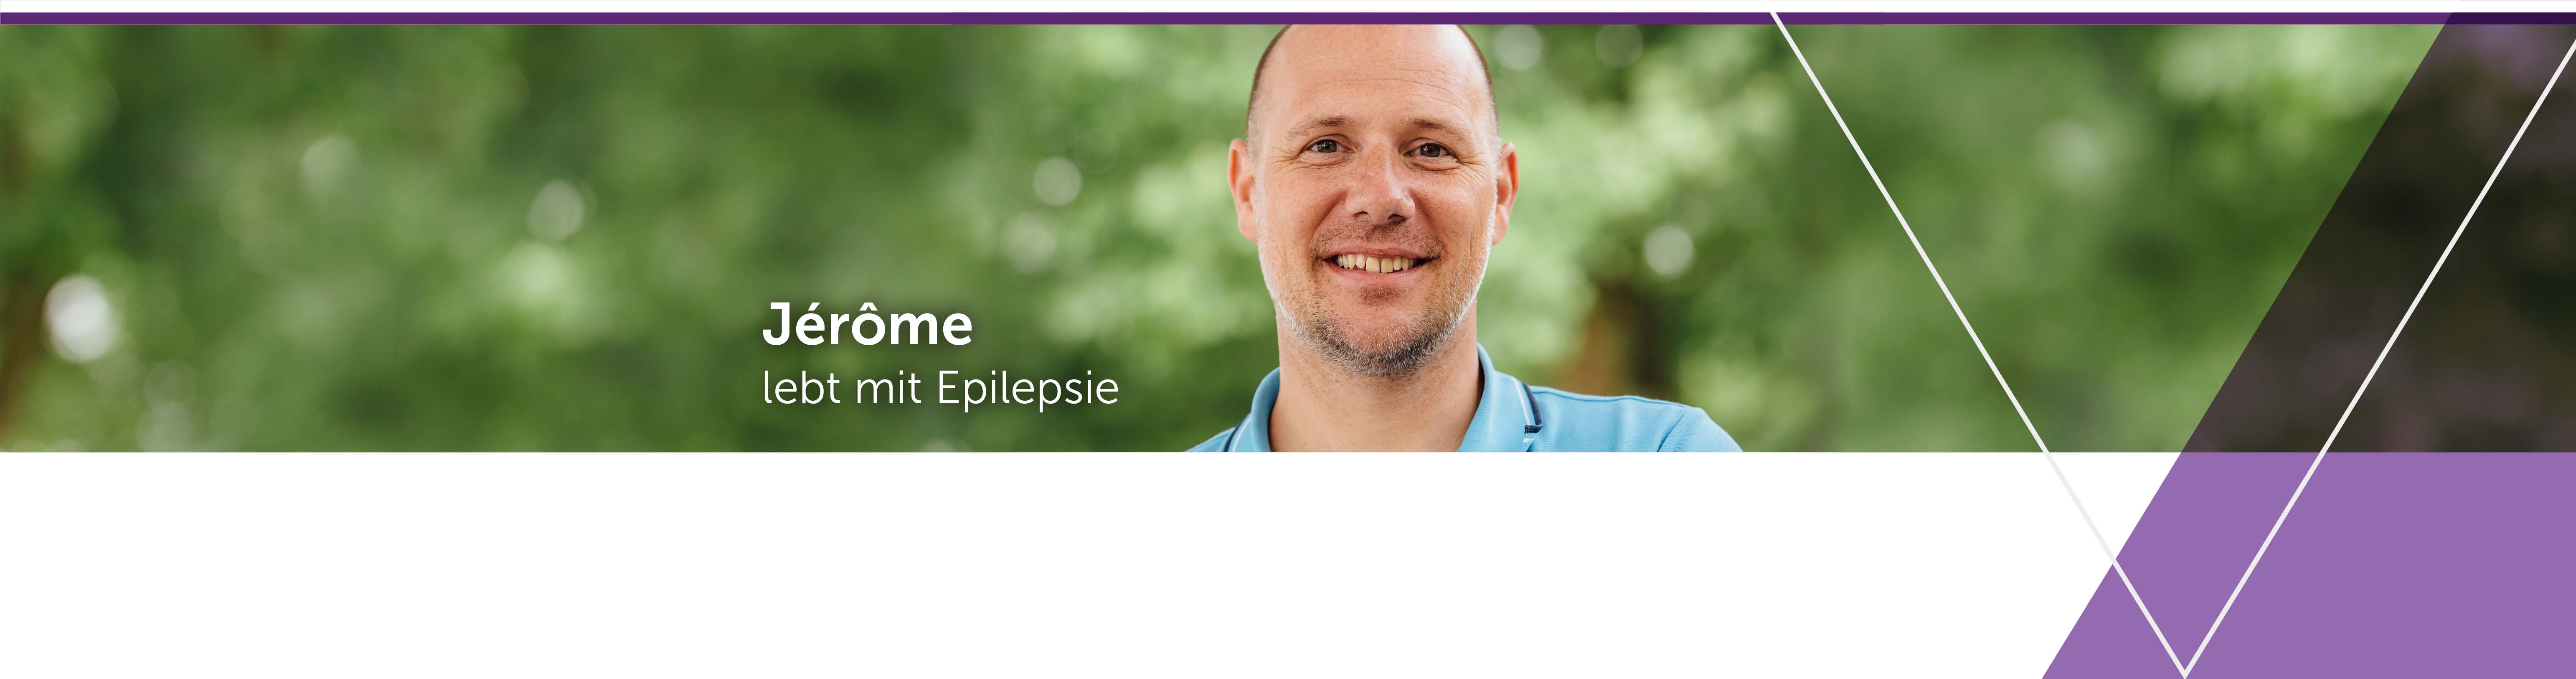 UCbCares bietet Unterstützung für Menschen mit Epilepsie.